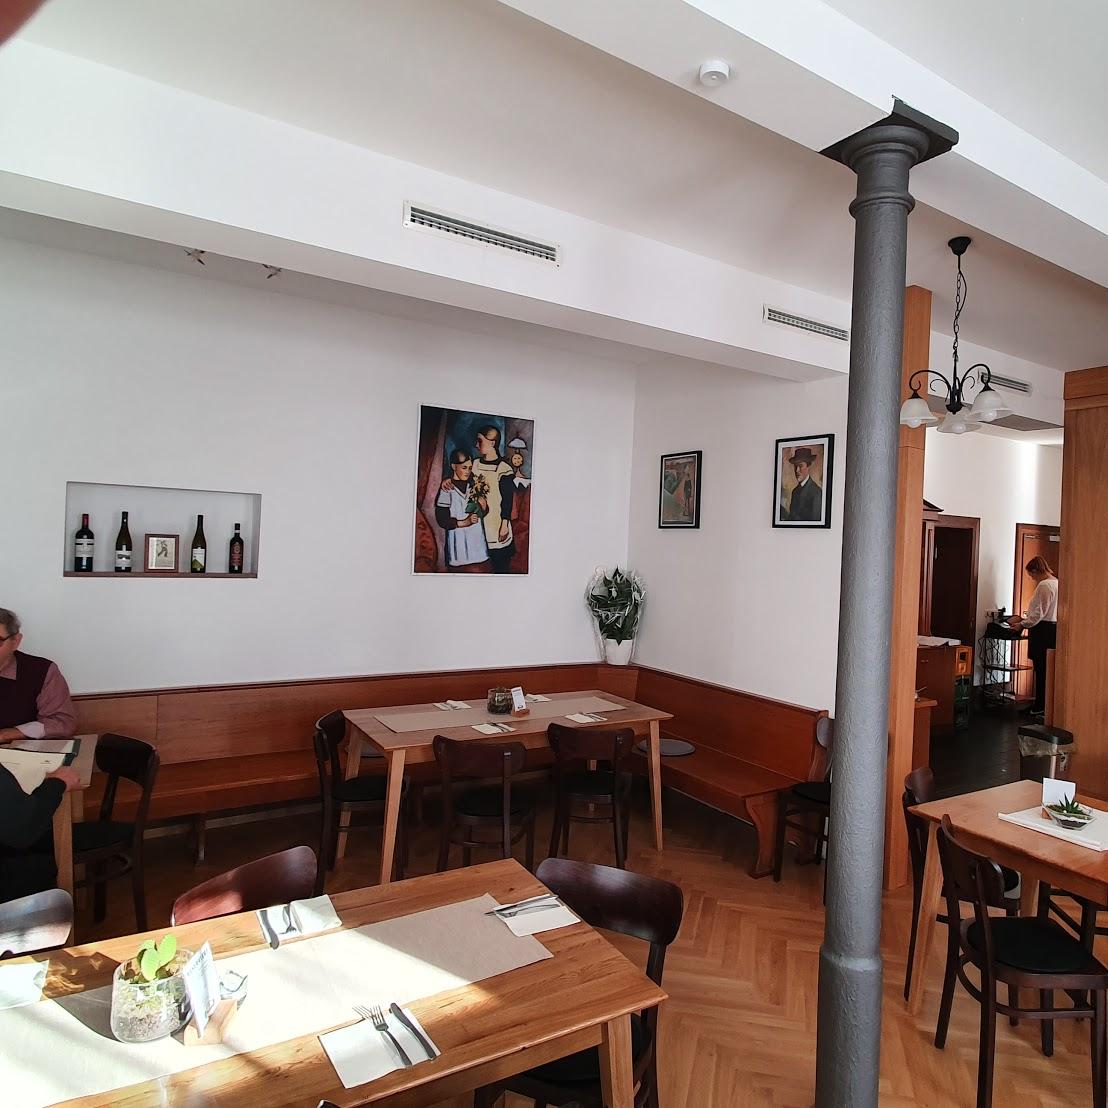 Restaurant "Gasthaus zum Maien" in  Wiesental